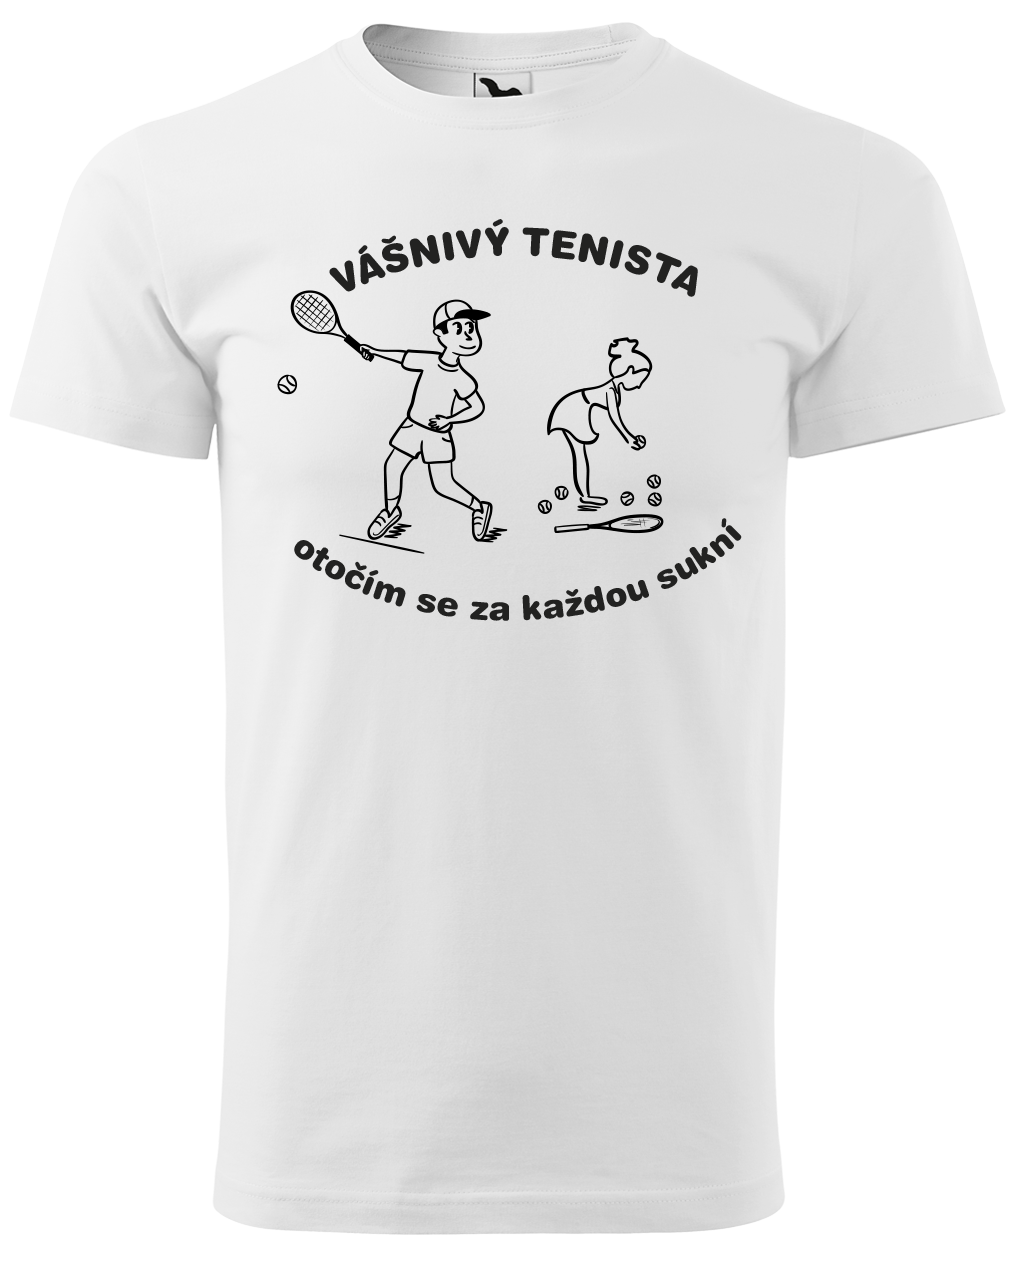 Vtipné tenisové tričko - Vášnivý tenista Velikost: S, Barva: Bílá (00)